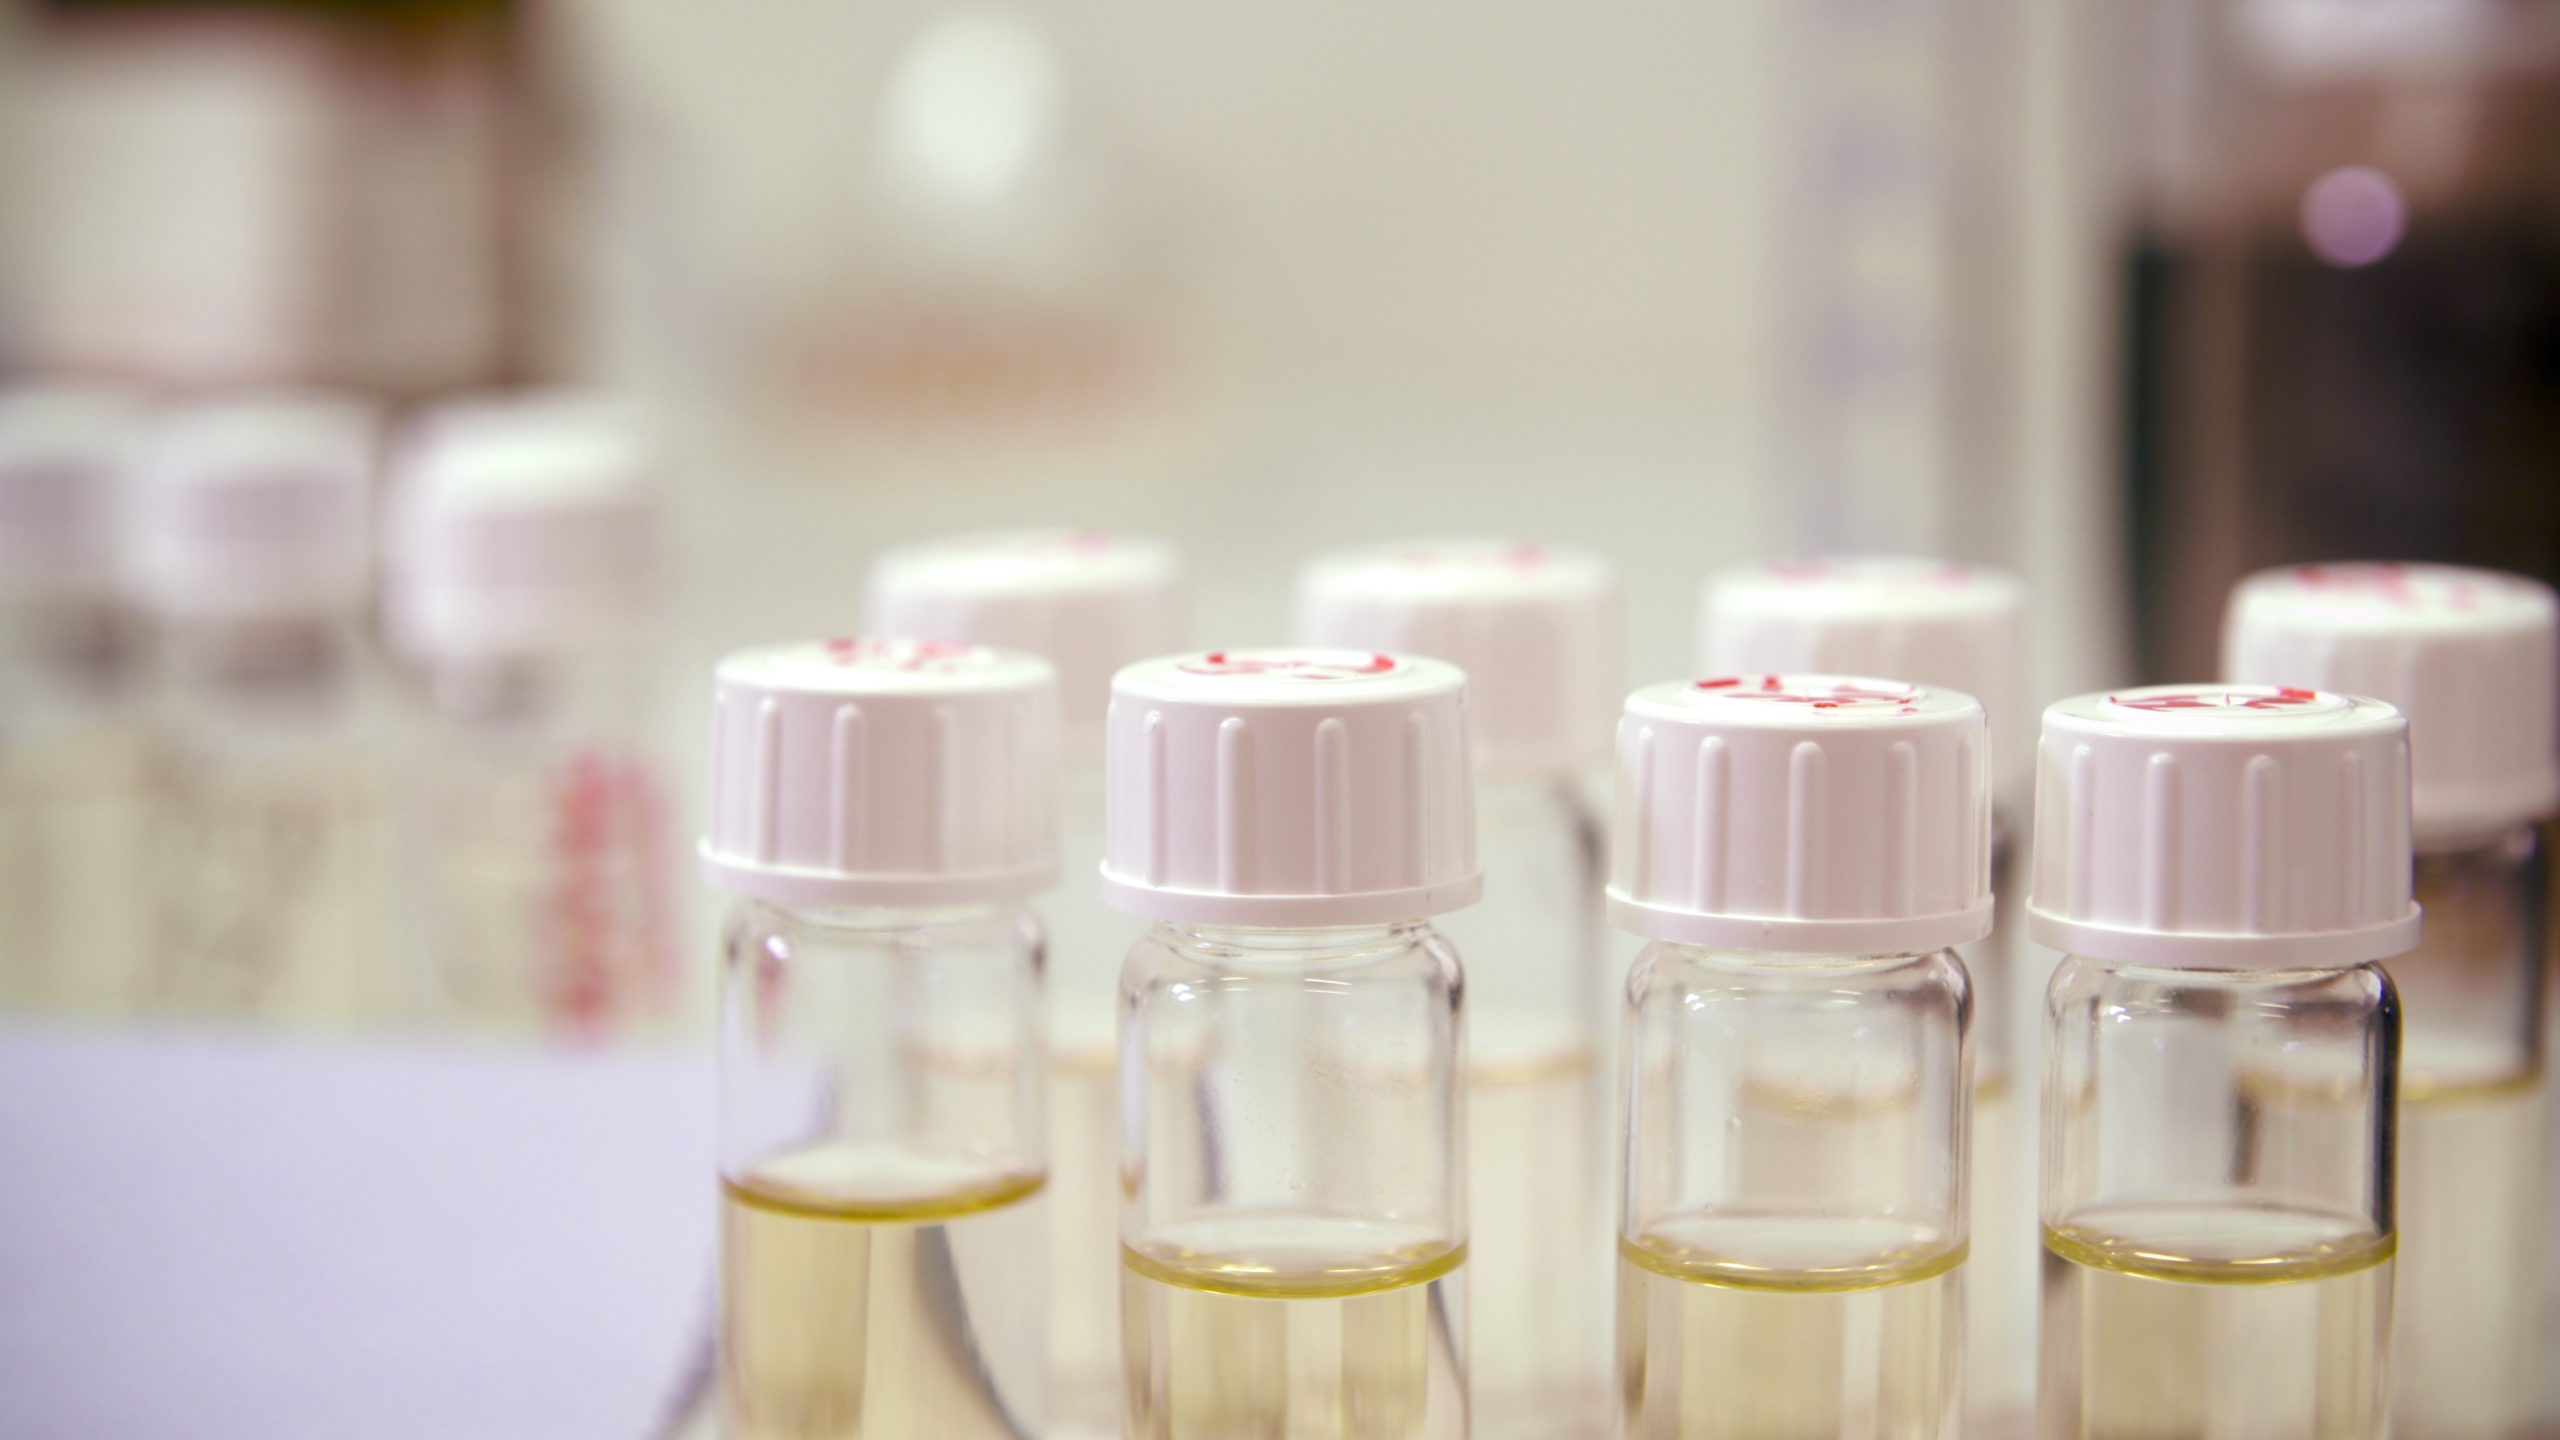 lab biodiesel samples in clear tubes